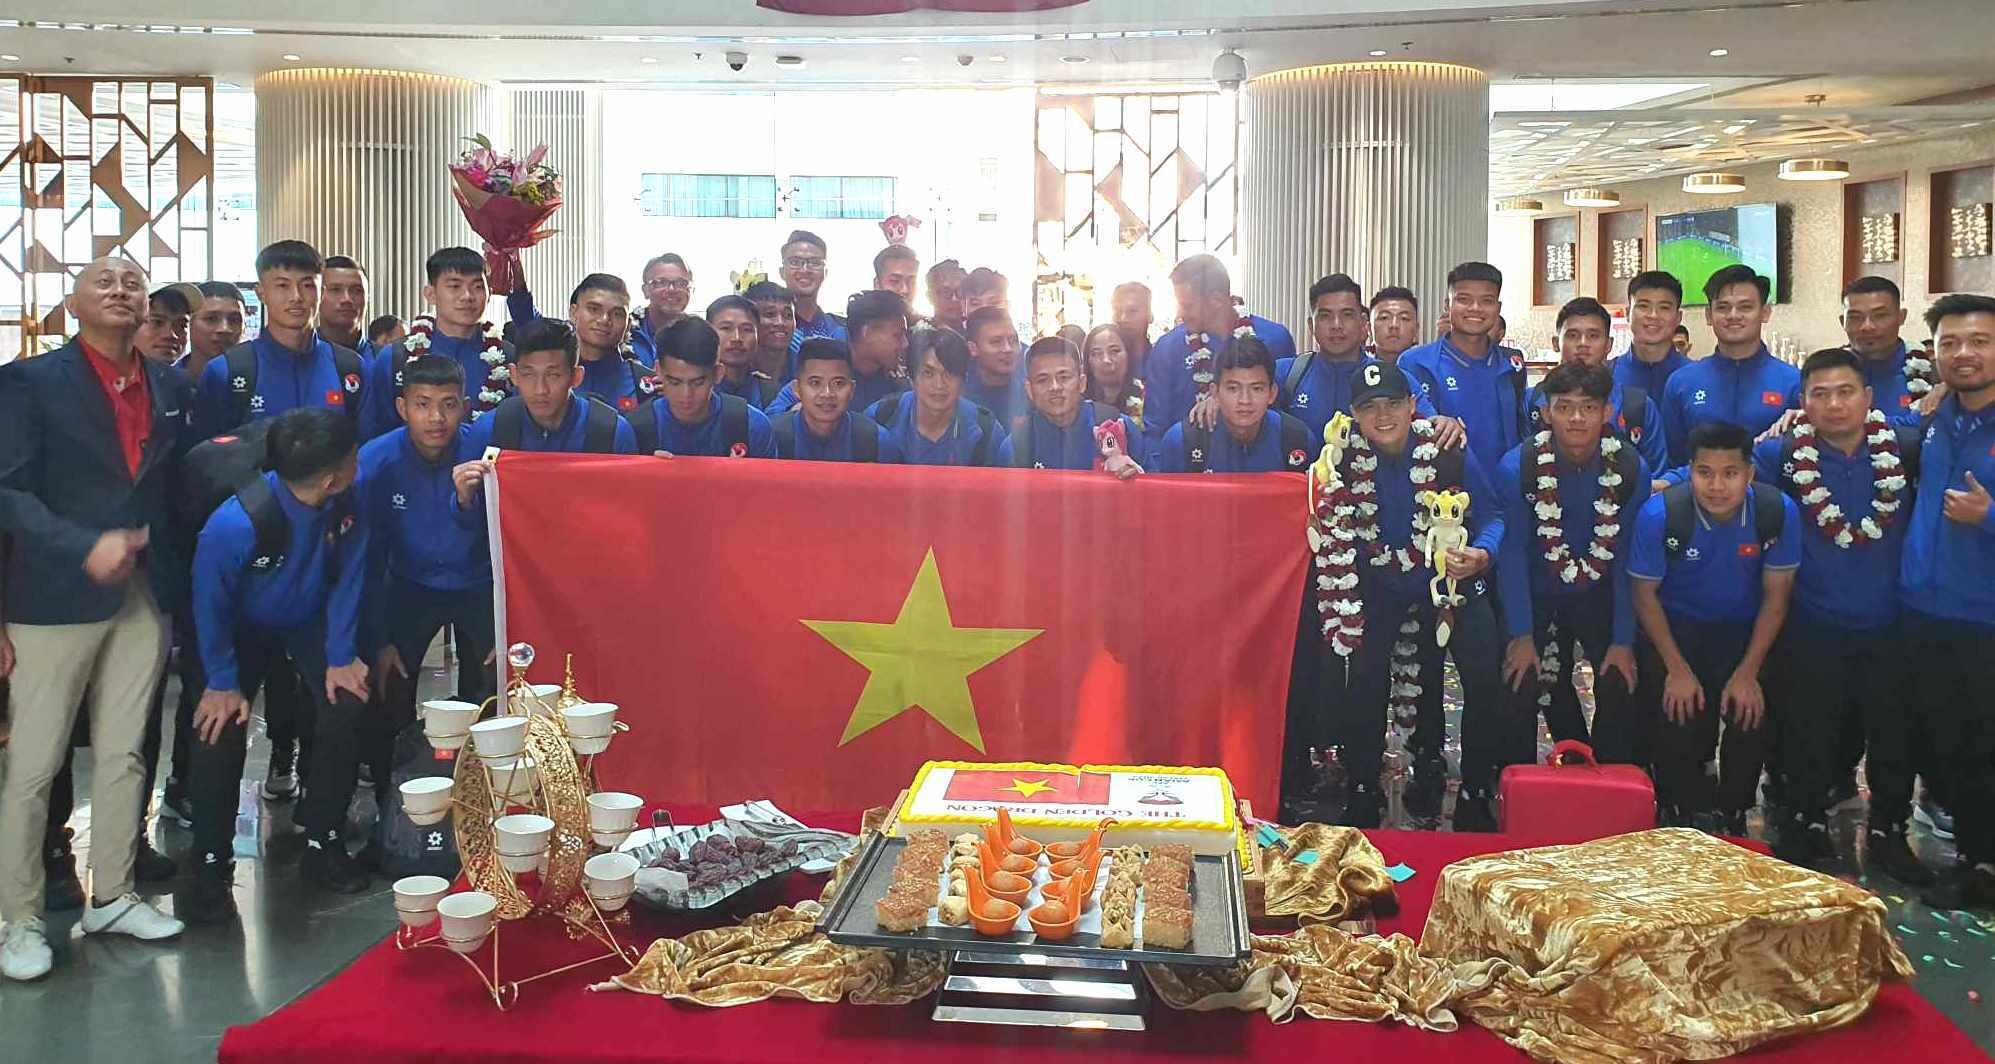 Đội tuyển Việt Nam được chào đón khi đặt chân đến Qatar.